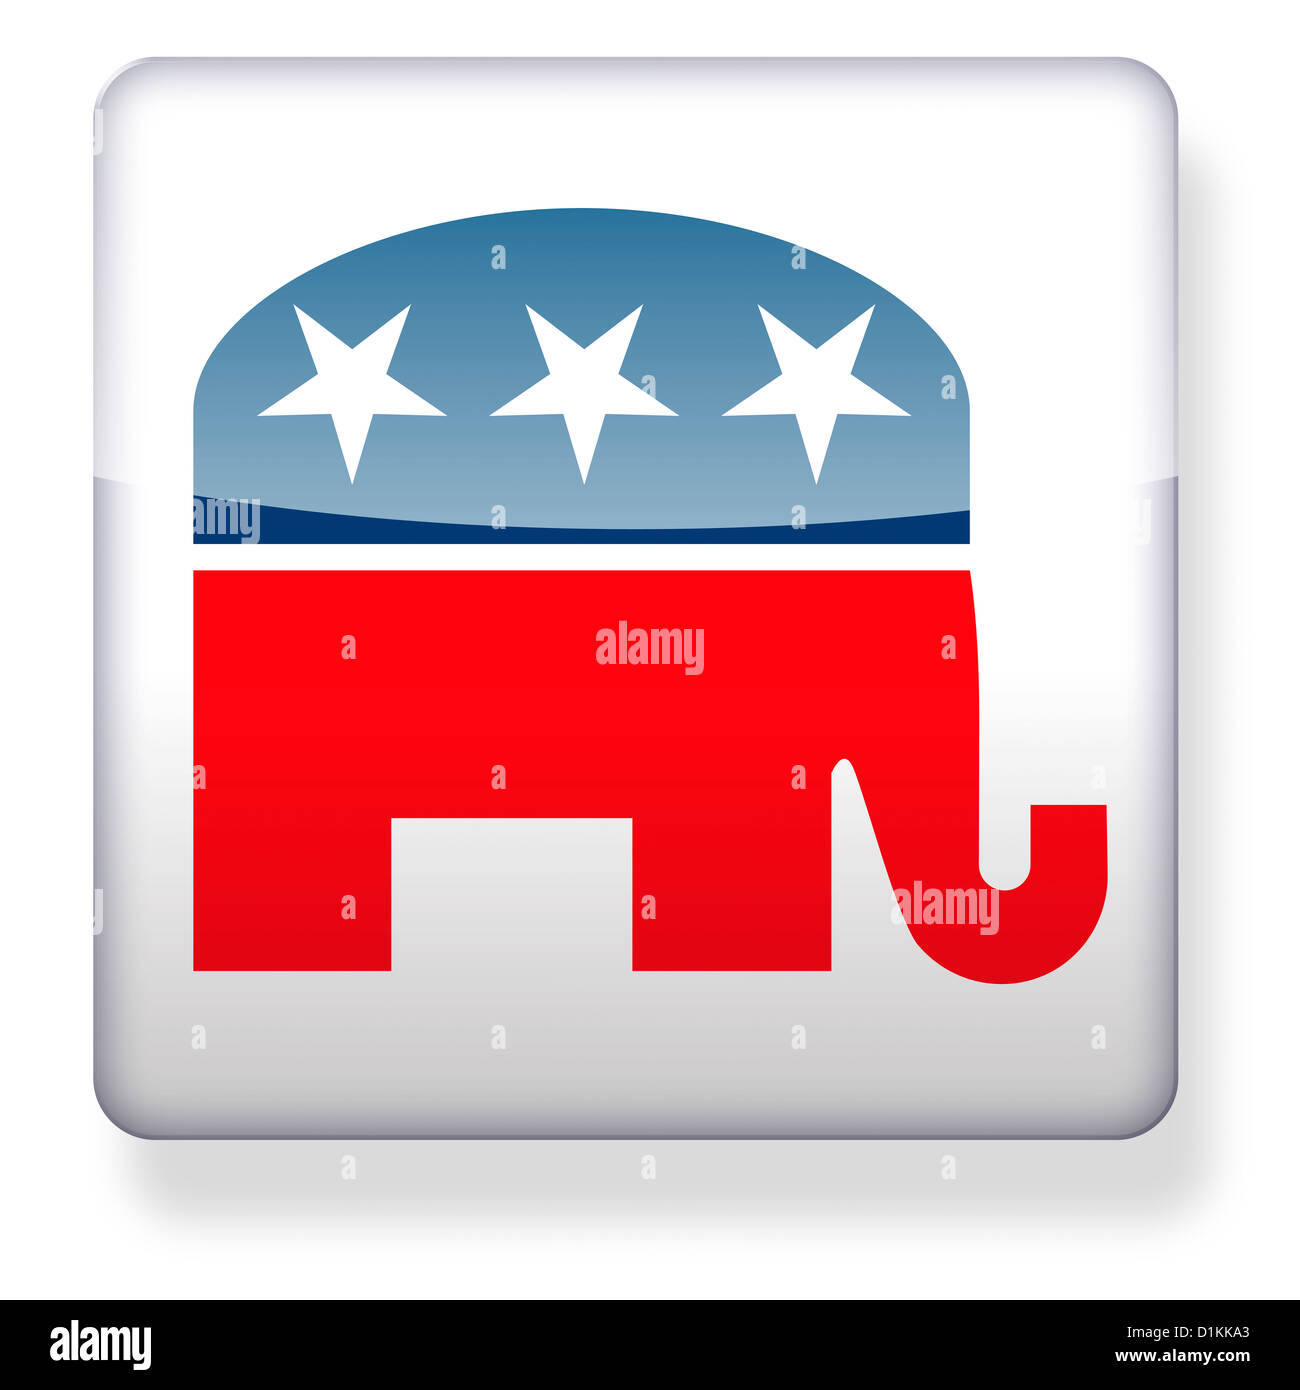 Republican elelphant political logo as an app icon Stock Photo